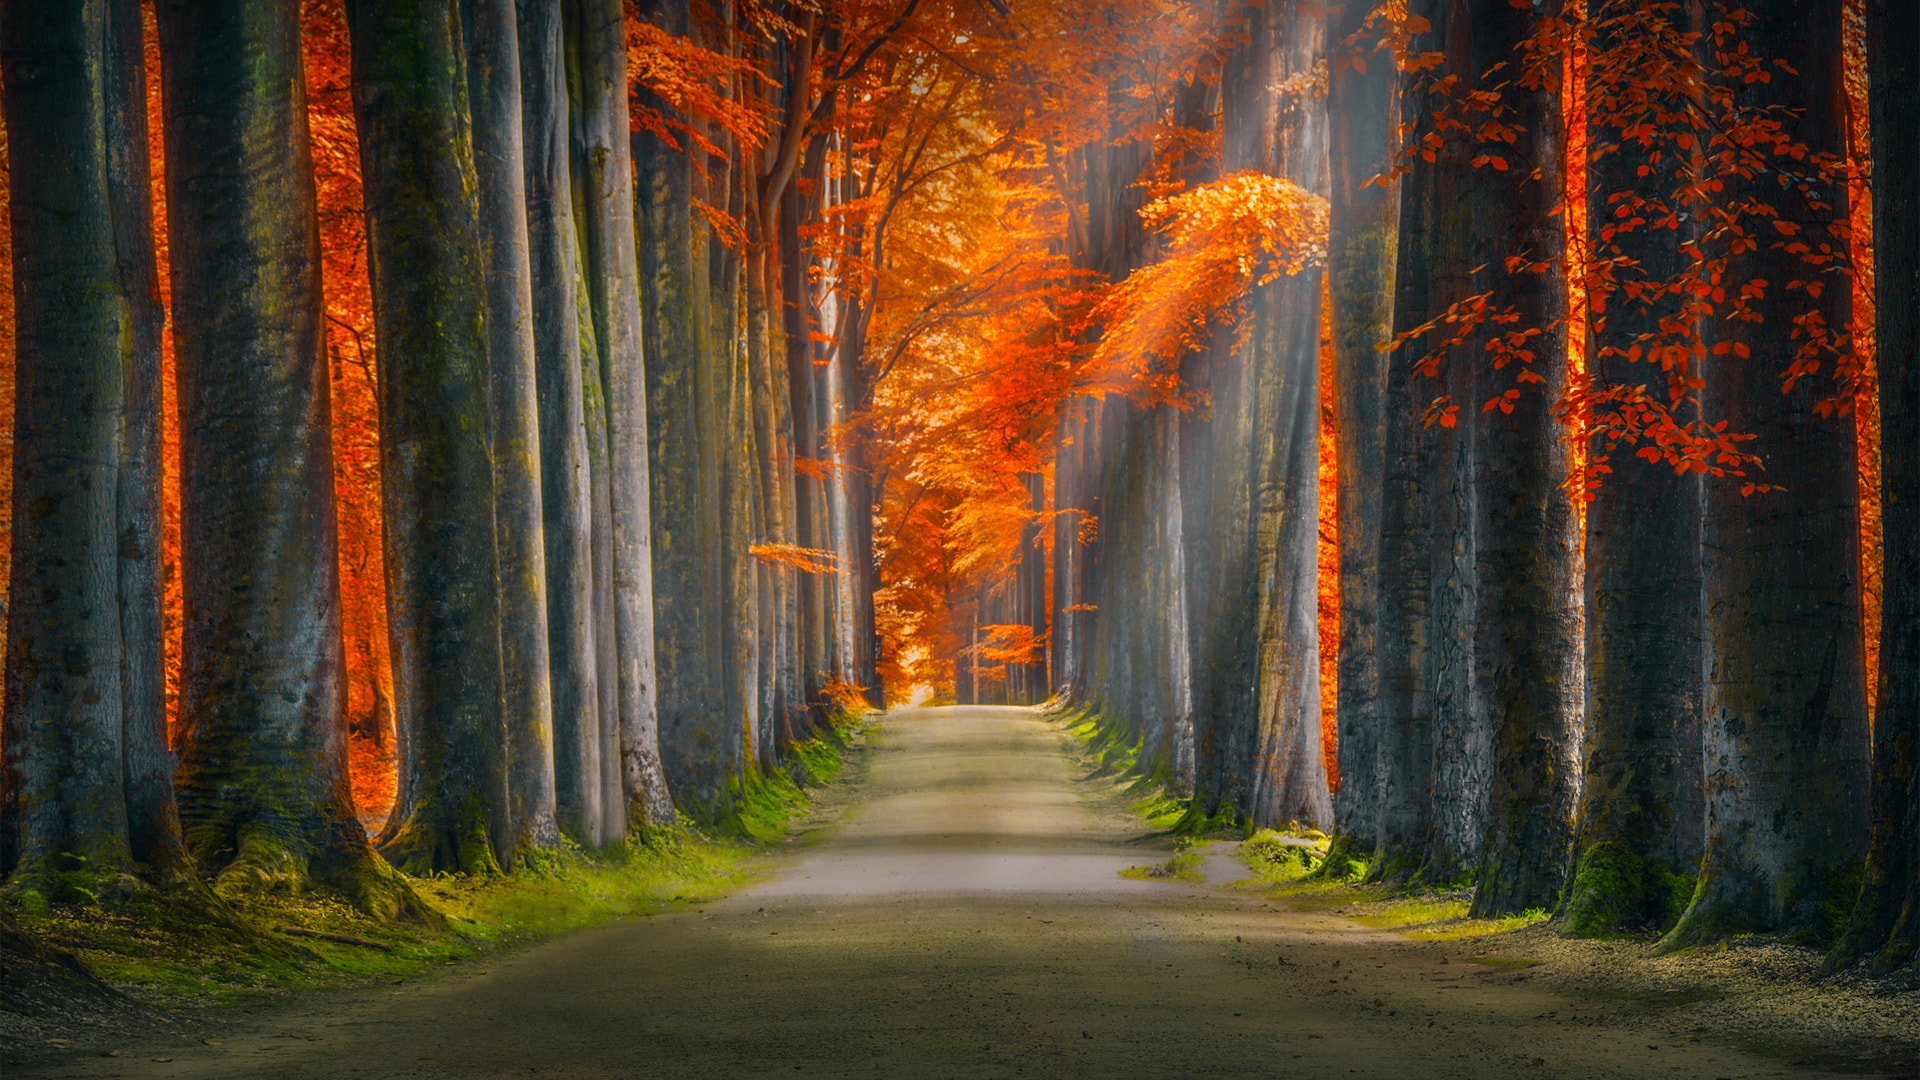 秋天阳光穿过森林 树叶红灿灿唯美风景